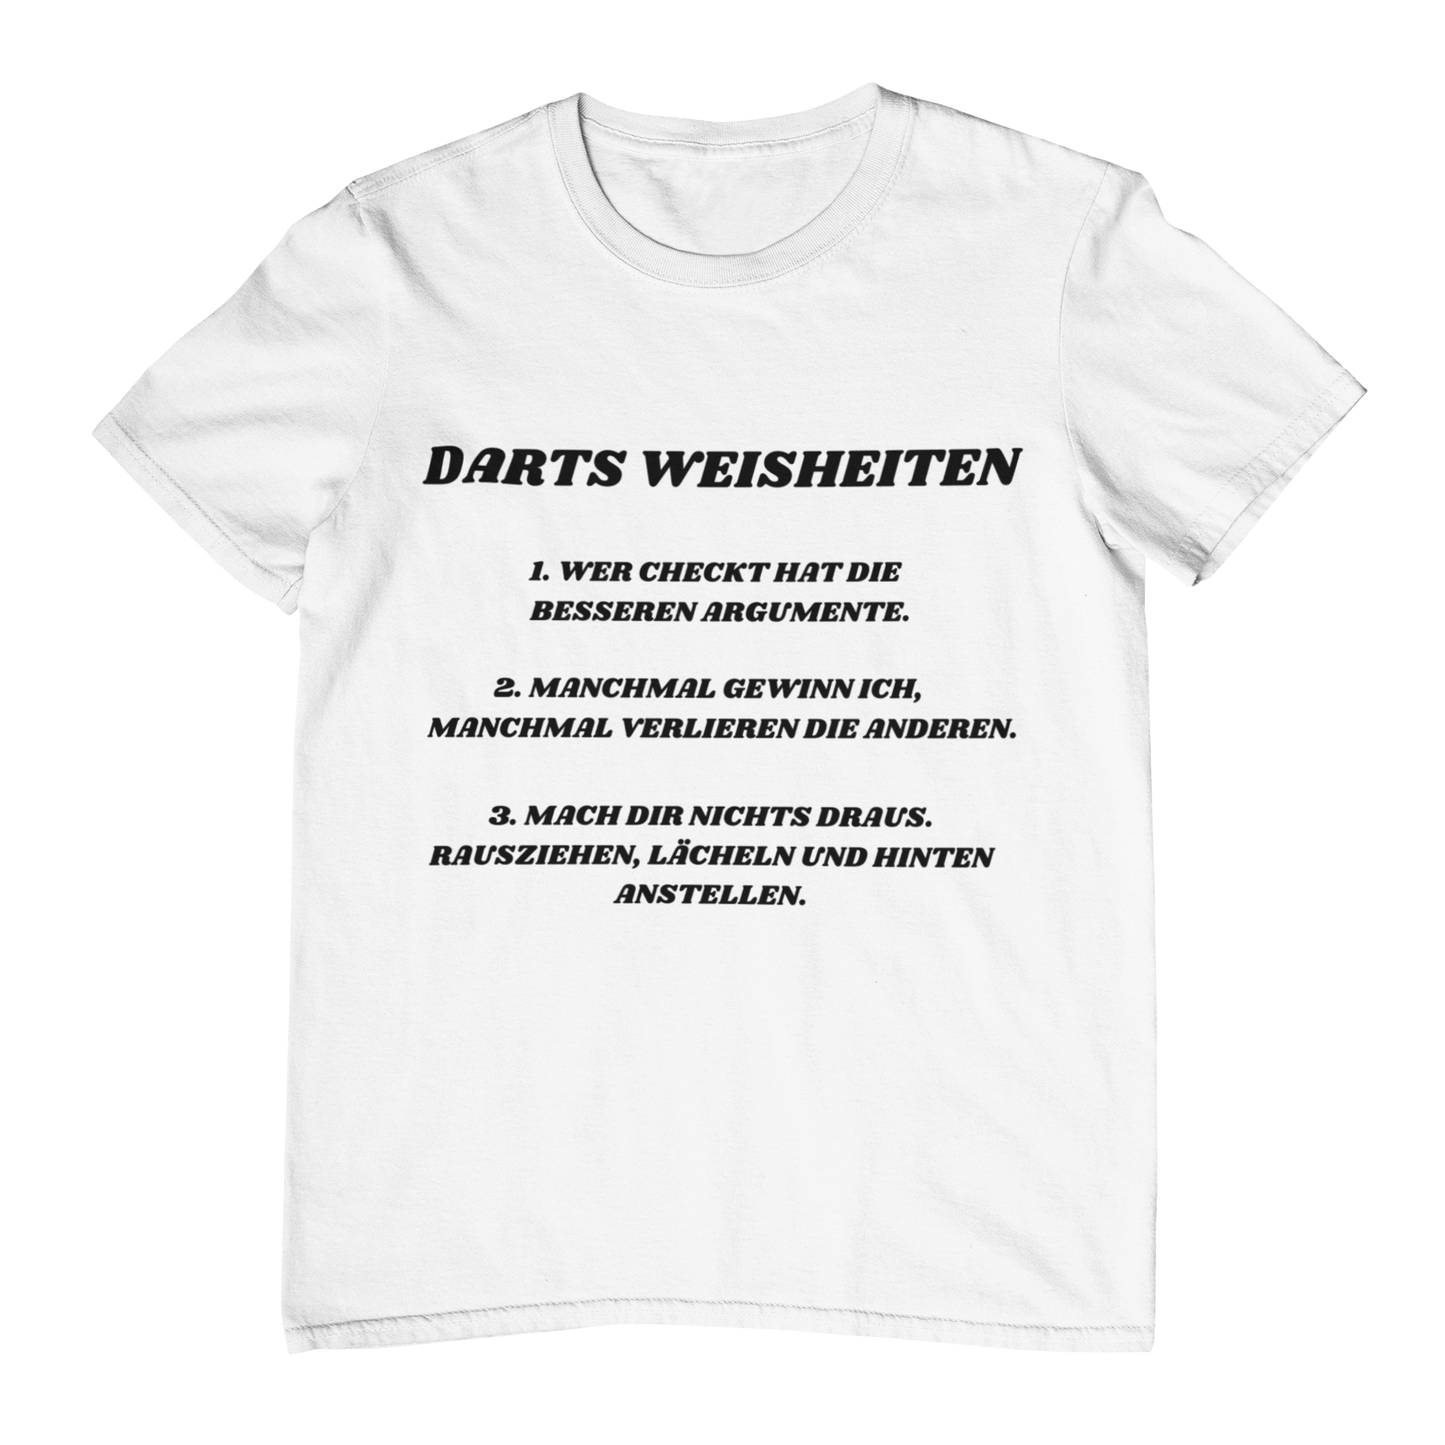 Darts Weisheiten - Shirt